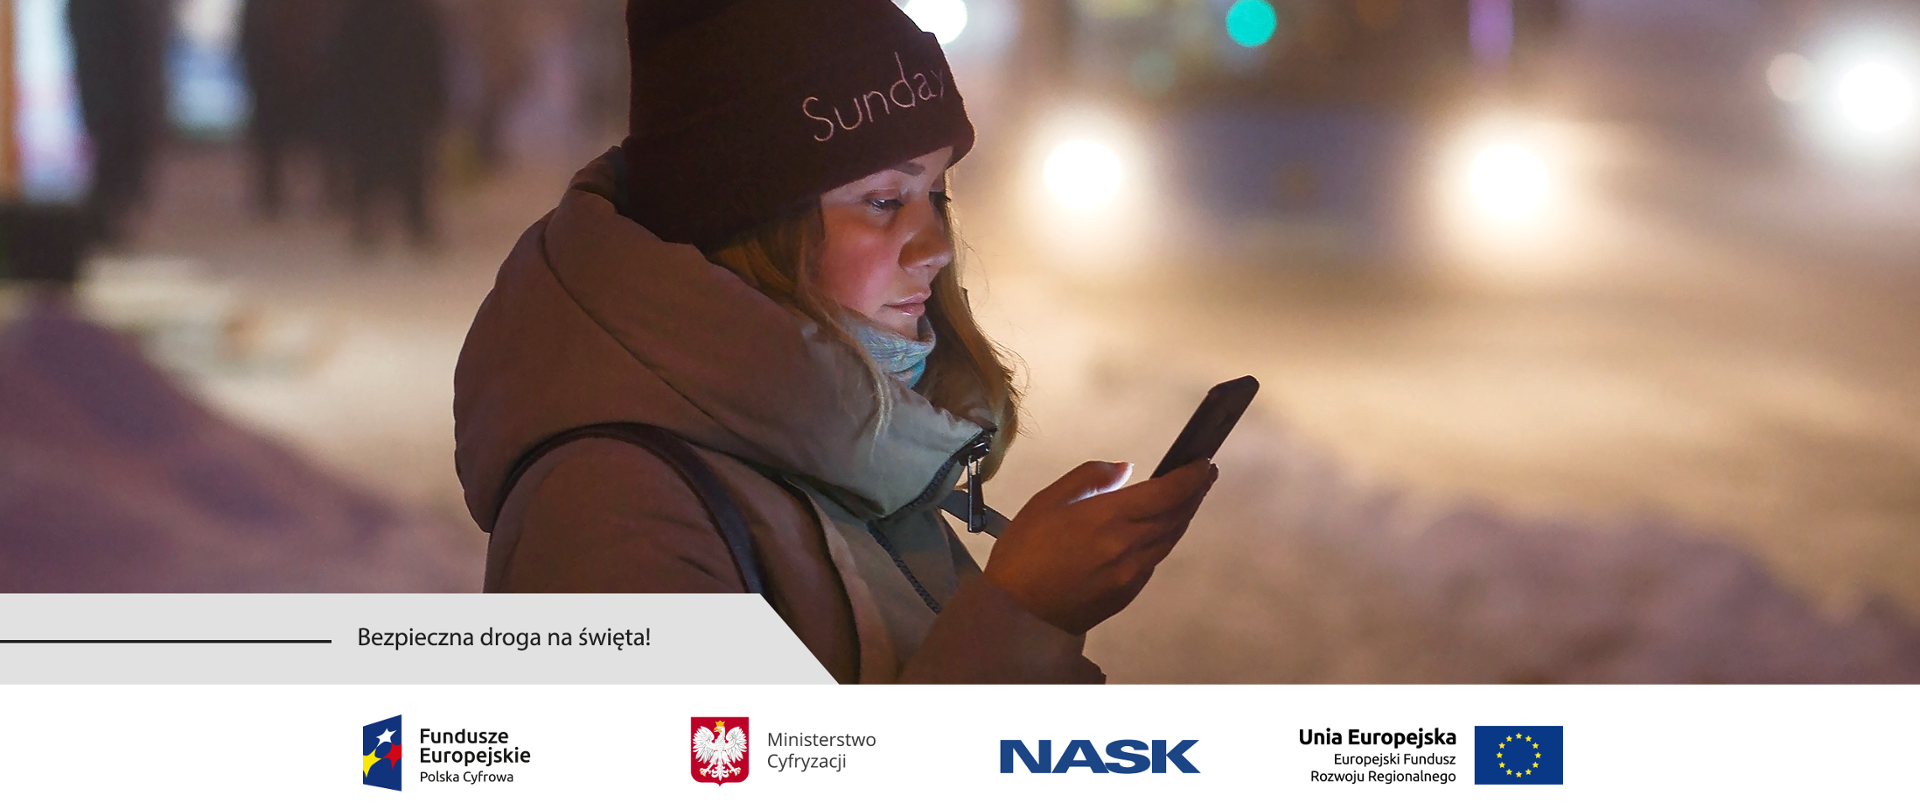 Zimowa aura. Na chodniku stoi dziewczyna trzymająca w prawej dłoni telefon komórkowy. W tle światła nadjeżdżającego pojazdu i ludzie na przystanku autobusowym.